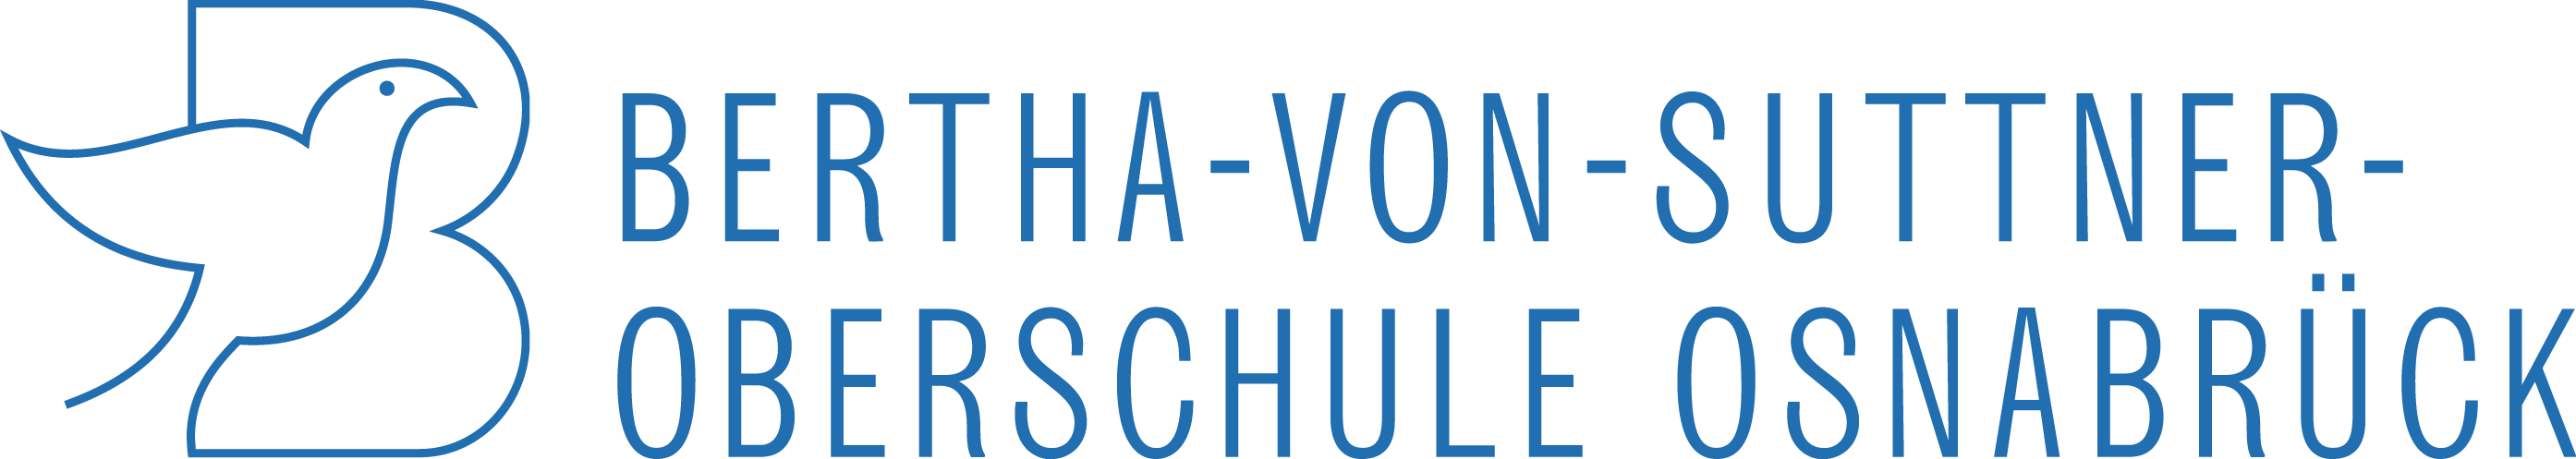 Bertha-von-Suttner-Oberschule